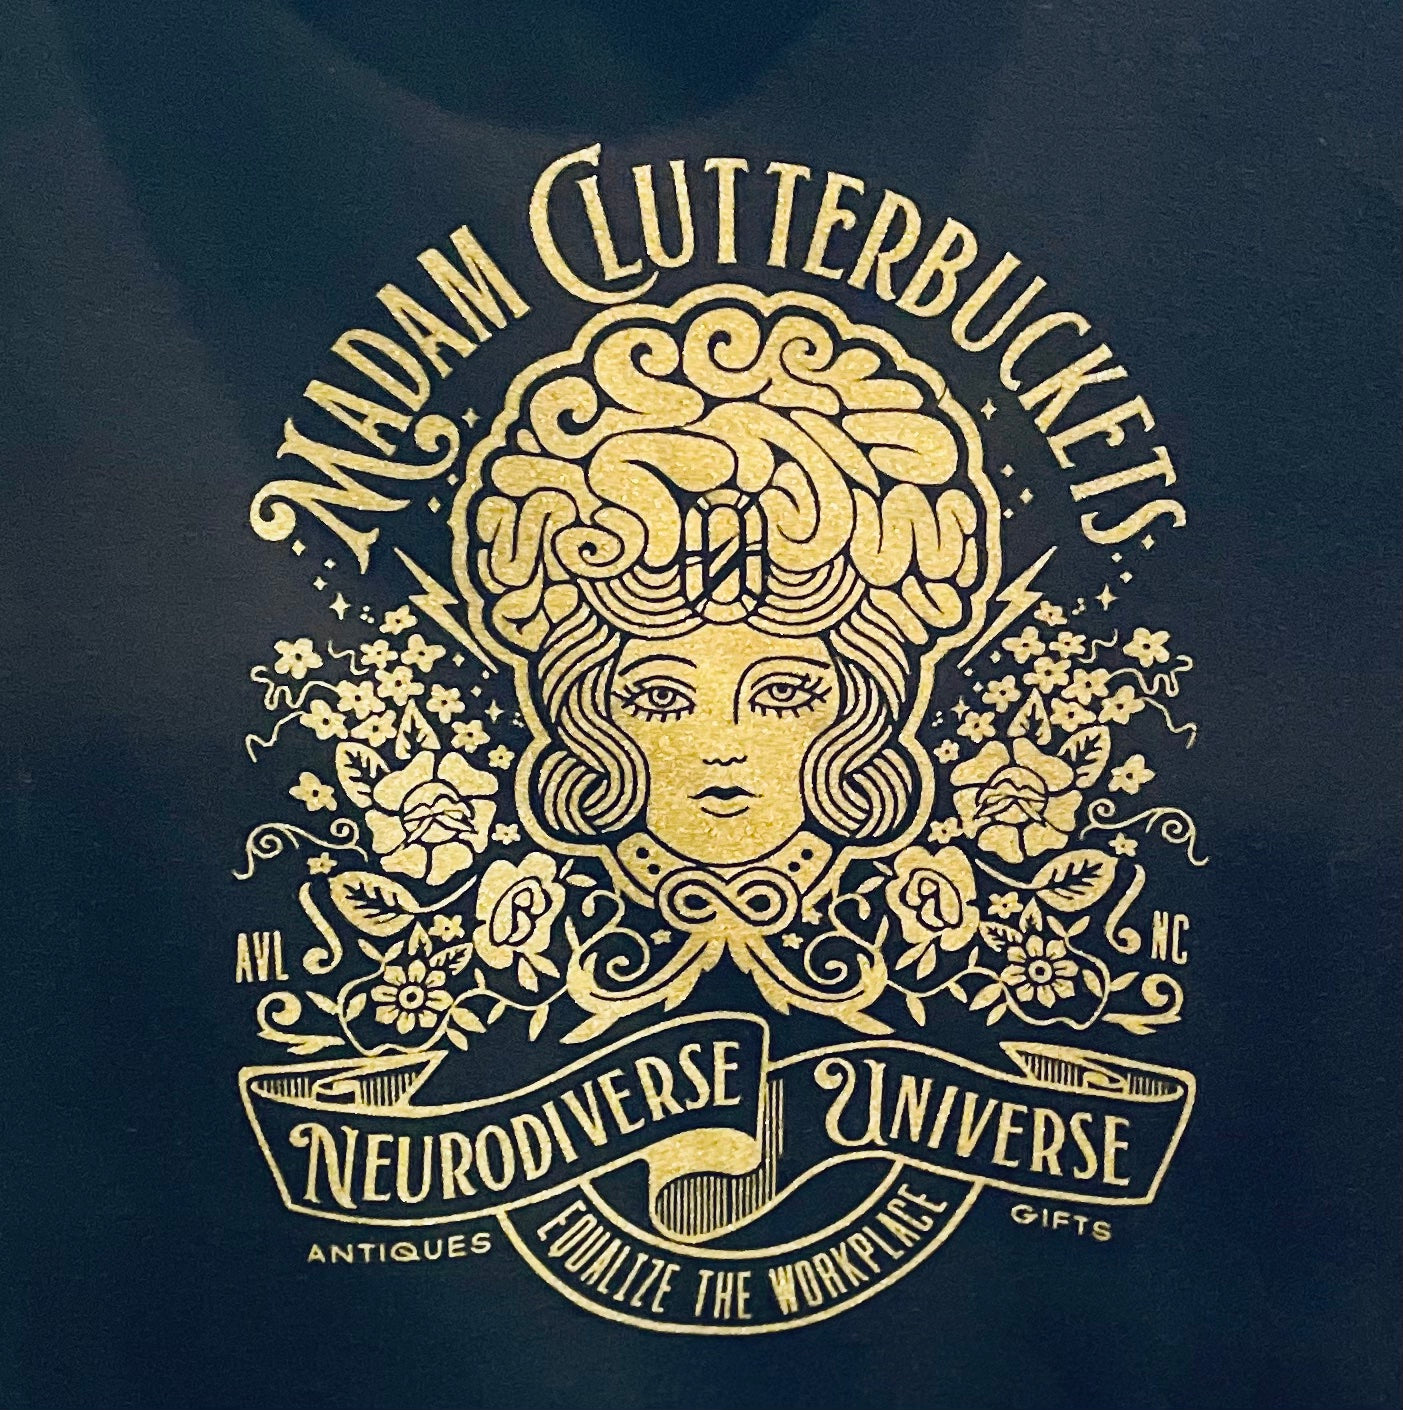 Madam Clutterbucket's Neurodiverse Universe Logo Hoodies!